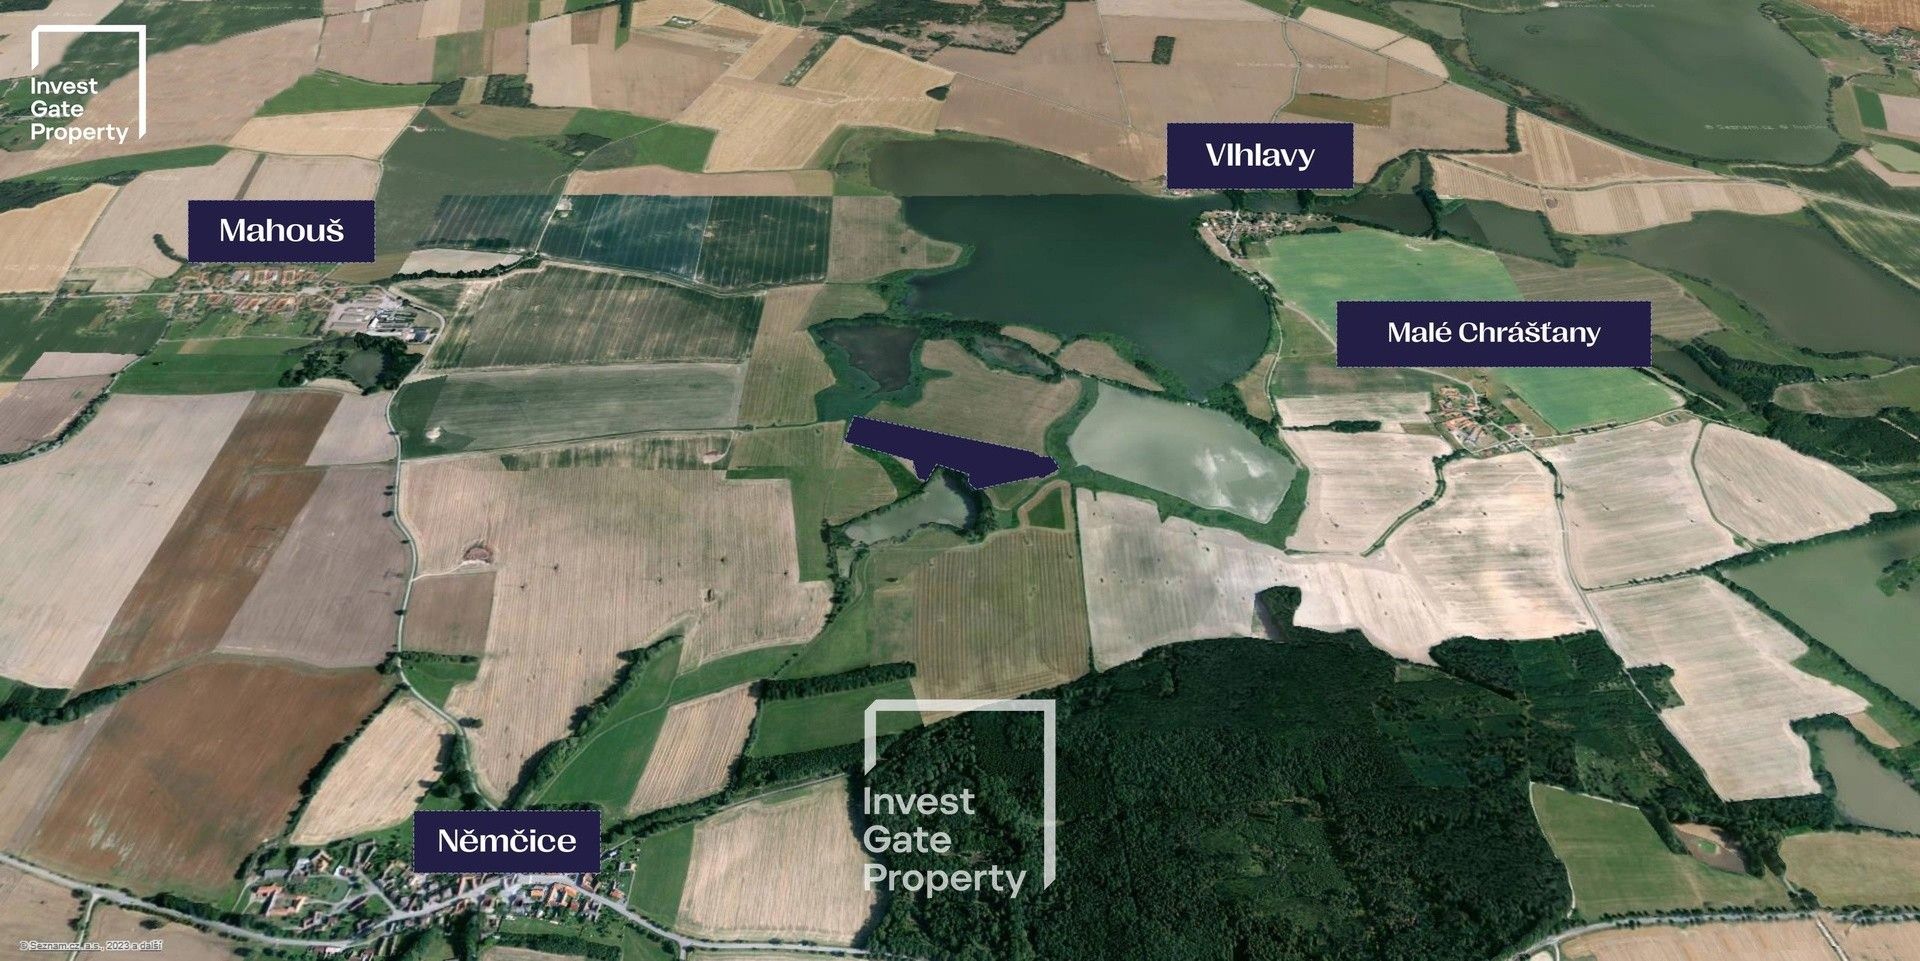 Zemědělské pozemky, Vlhlavy, Sedlec, 52 629 m²